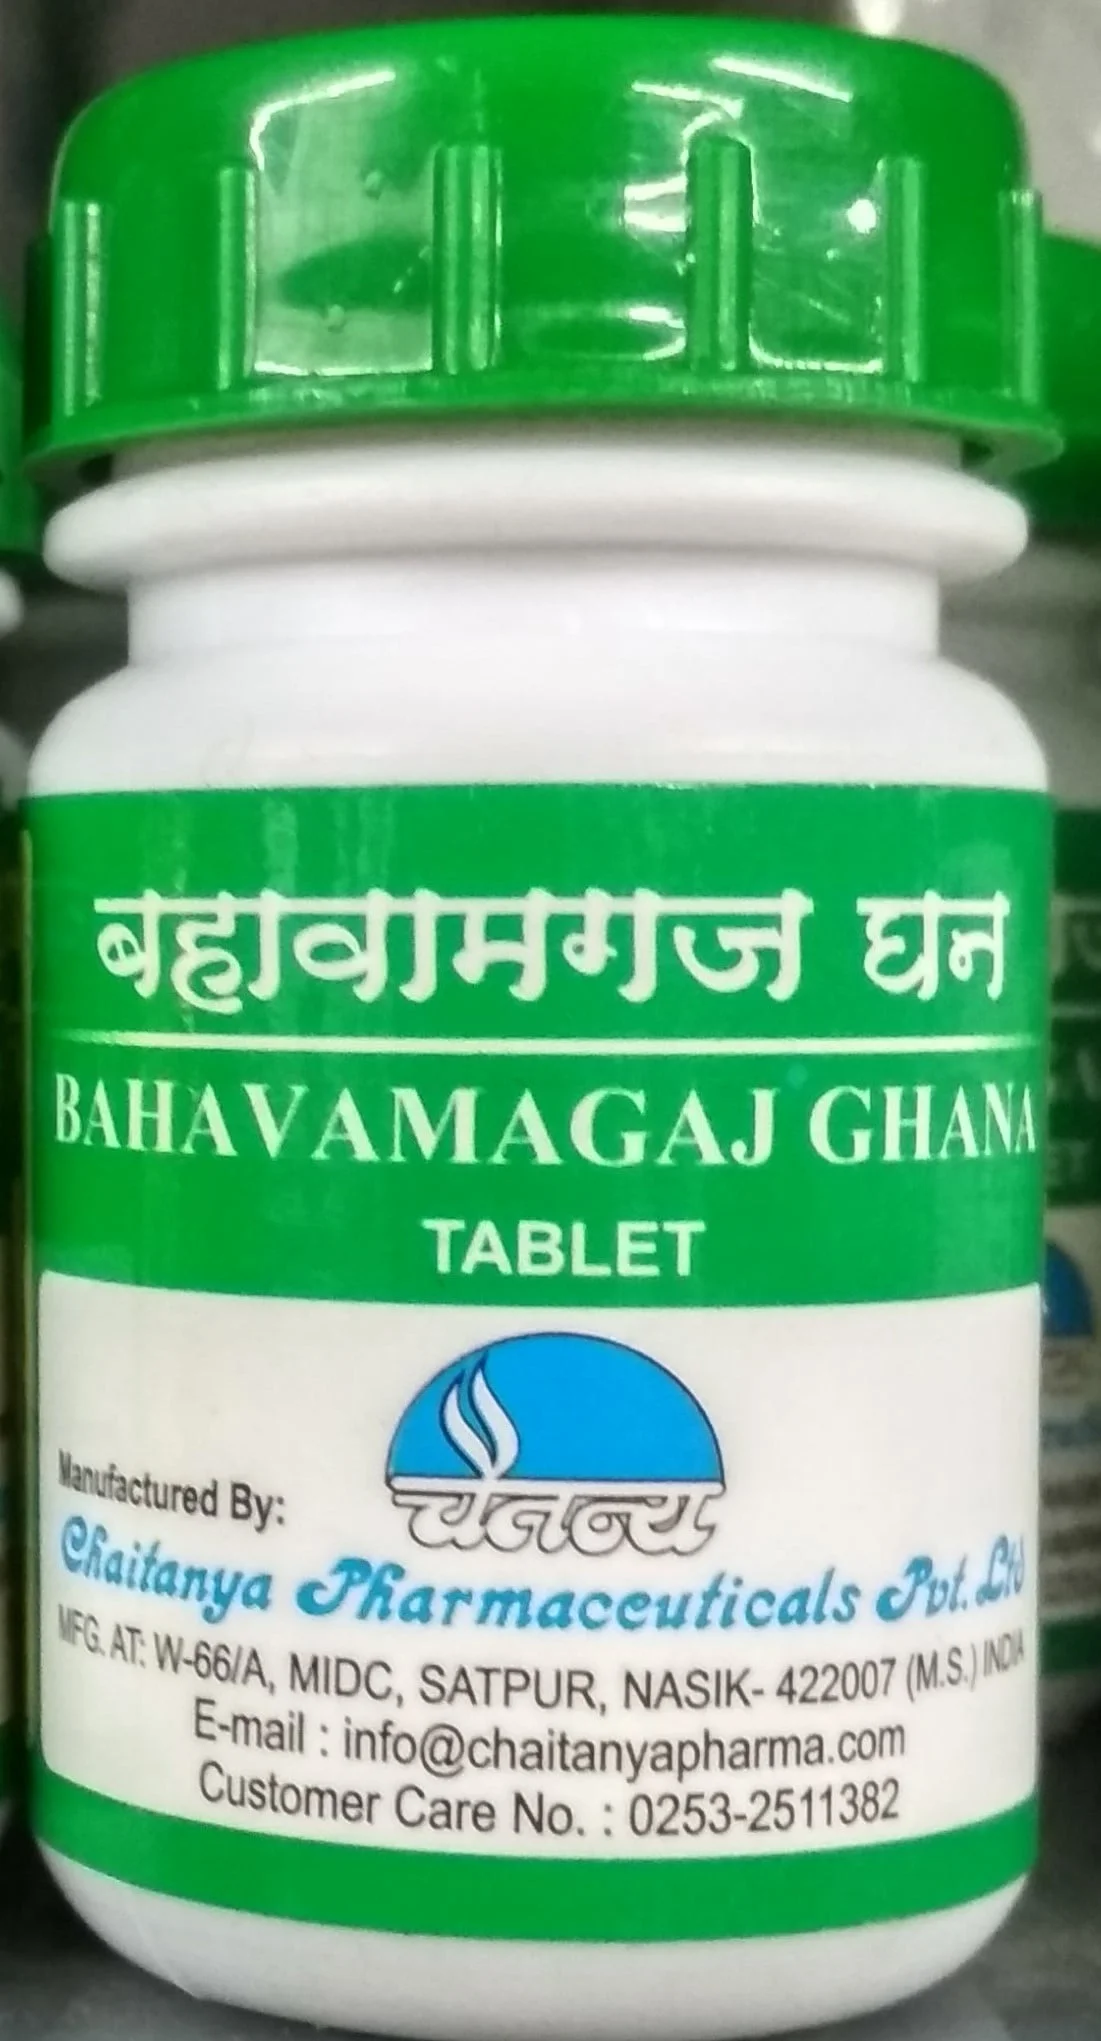 bahavamagaj bahavamag ghana 60 tab upto 20% off chaitanya pharmaceuticals